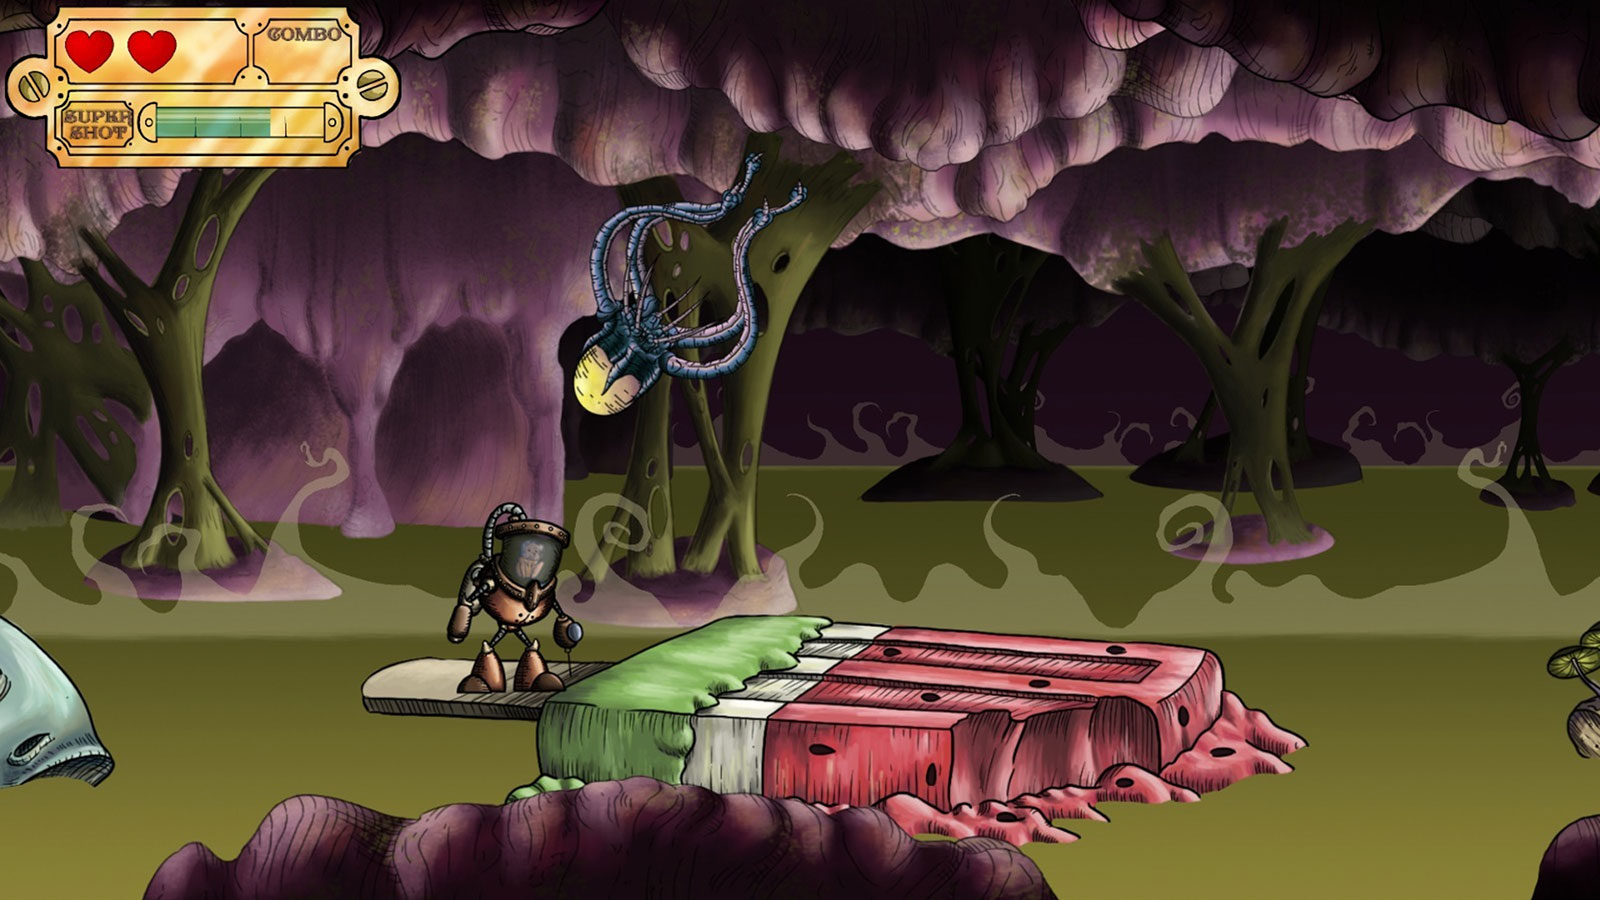 El jugador se encuentra en una plataforma hecha de una paleta de sandía derretida